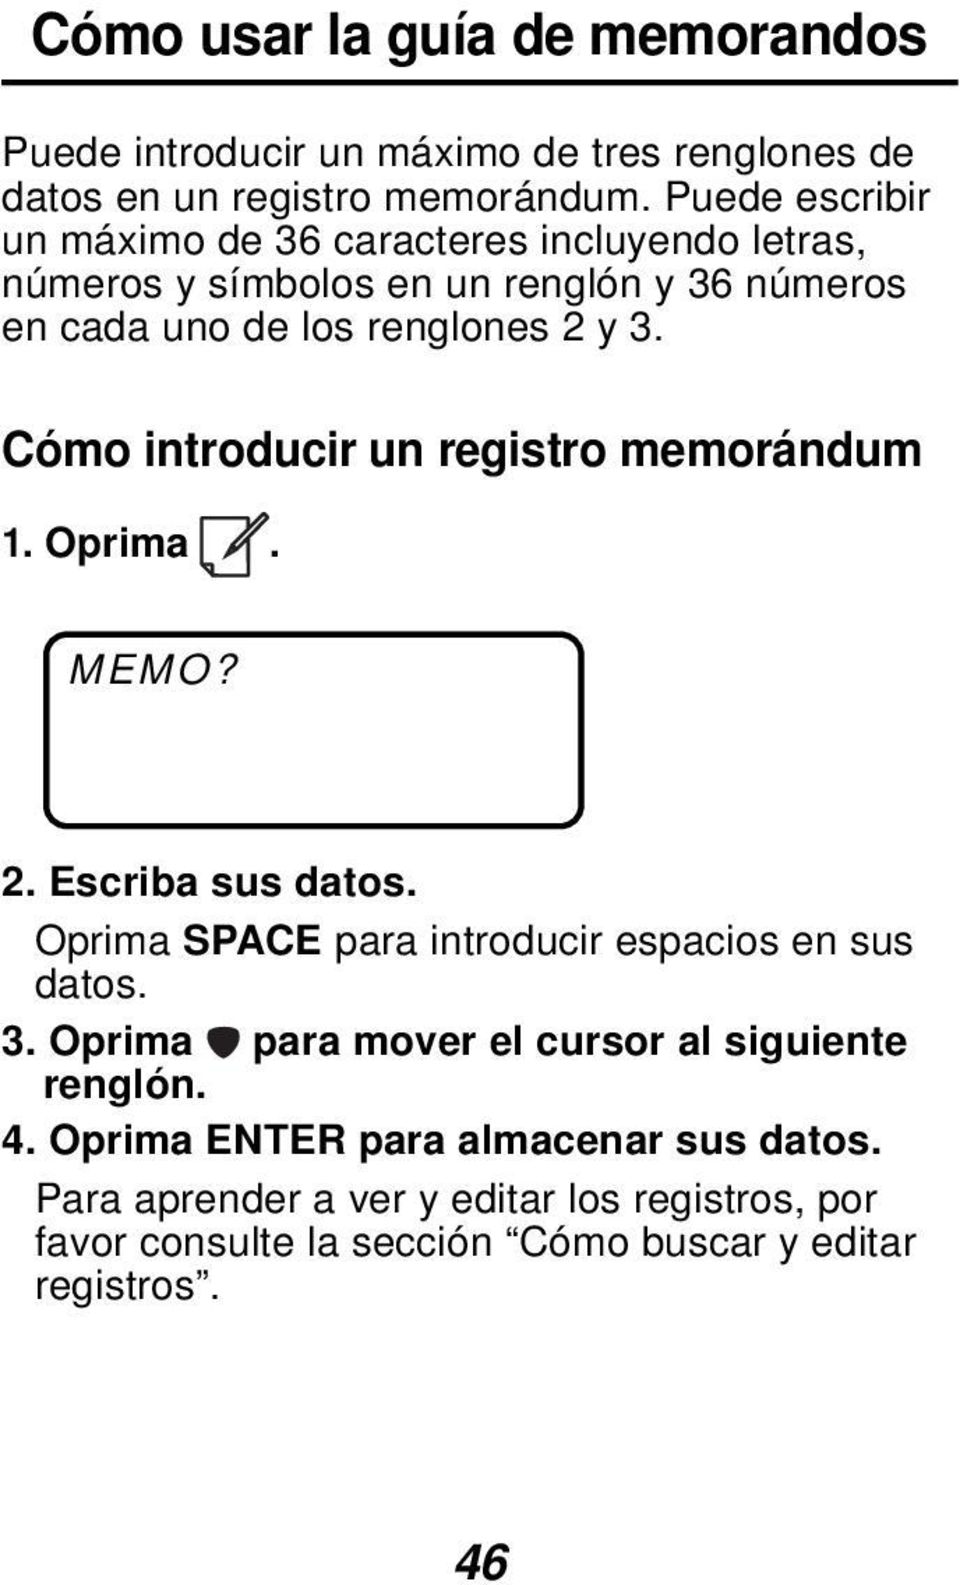 Cómo introducir un registro memorándum 1. Oprima. MEMO? 2. Escriba sus datos. Oprima SPACE para introducir espacios en sus datos. 3.